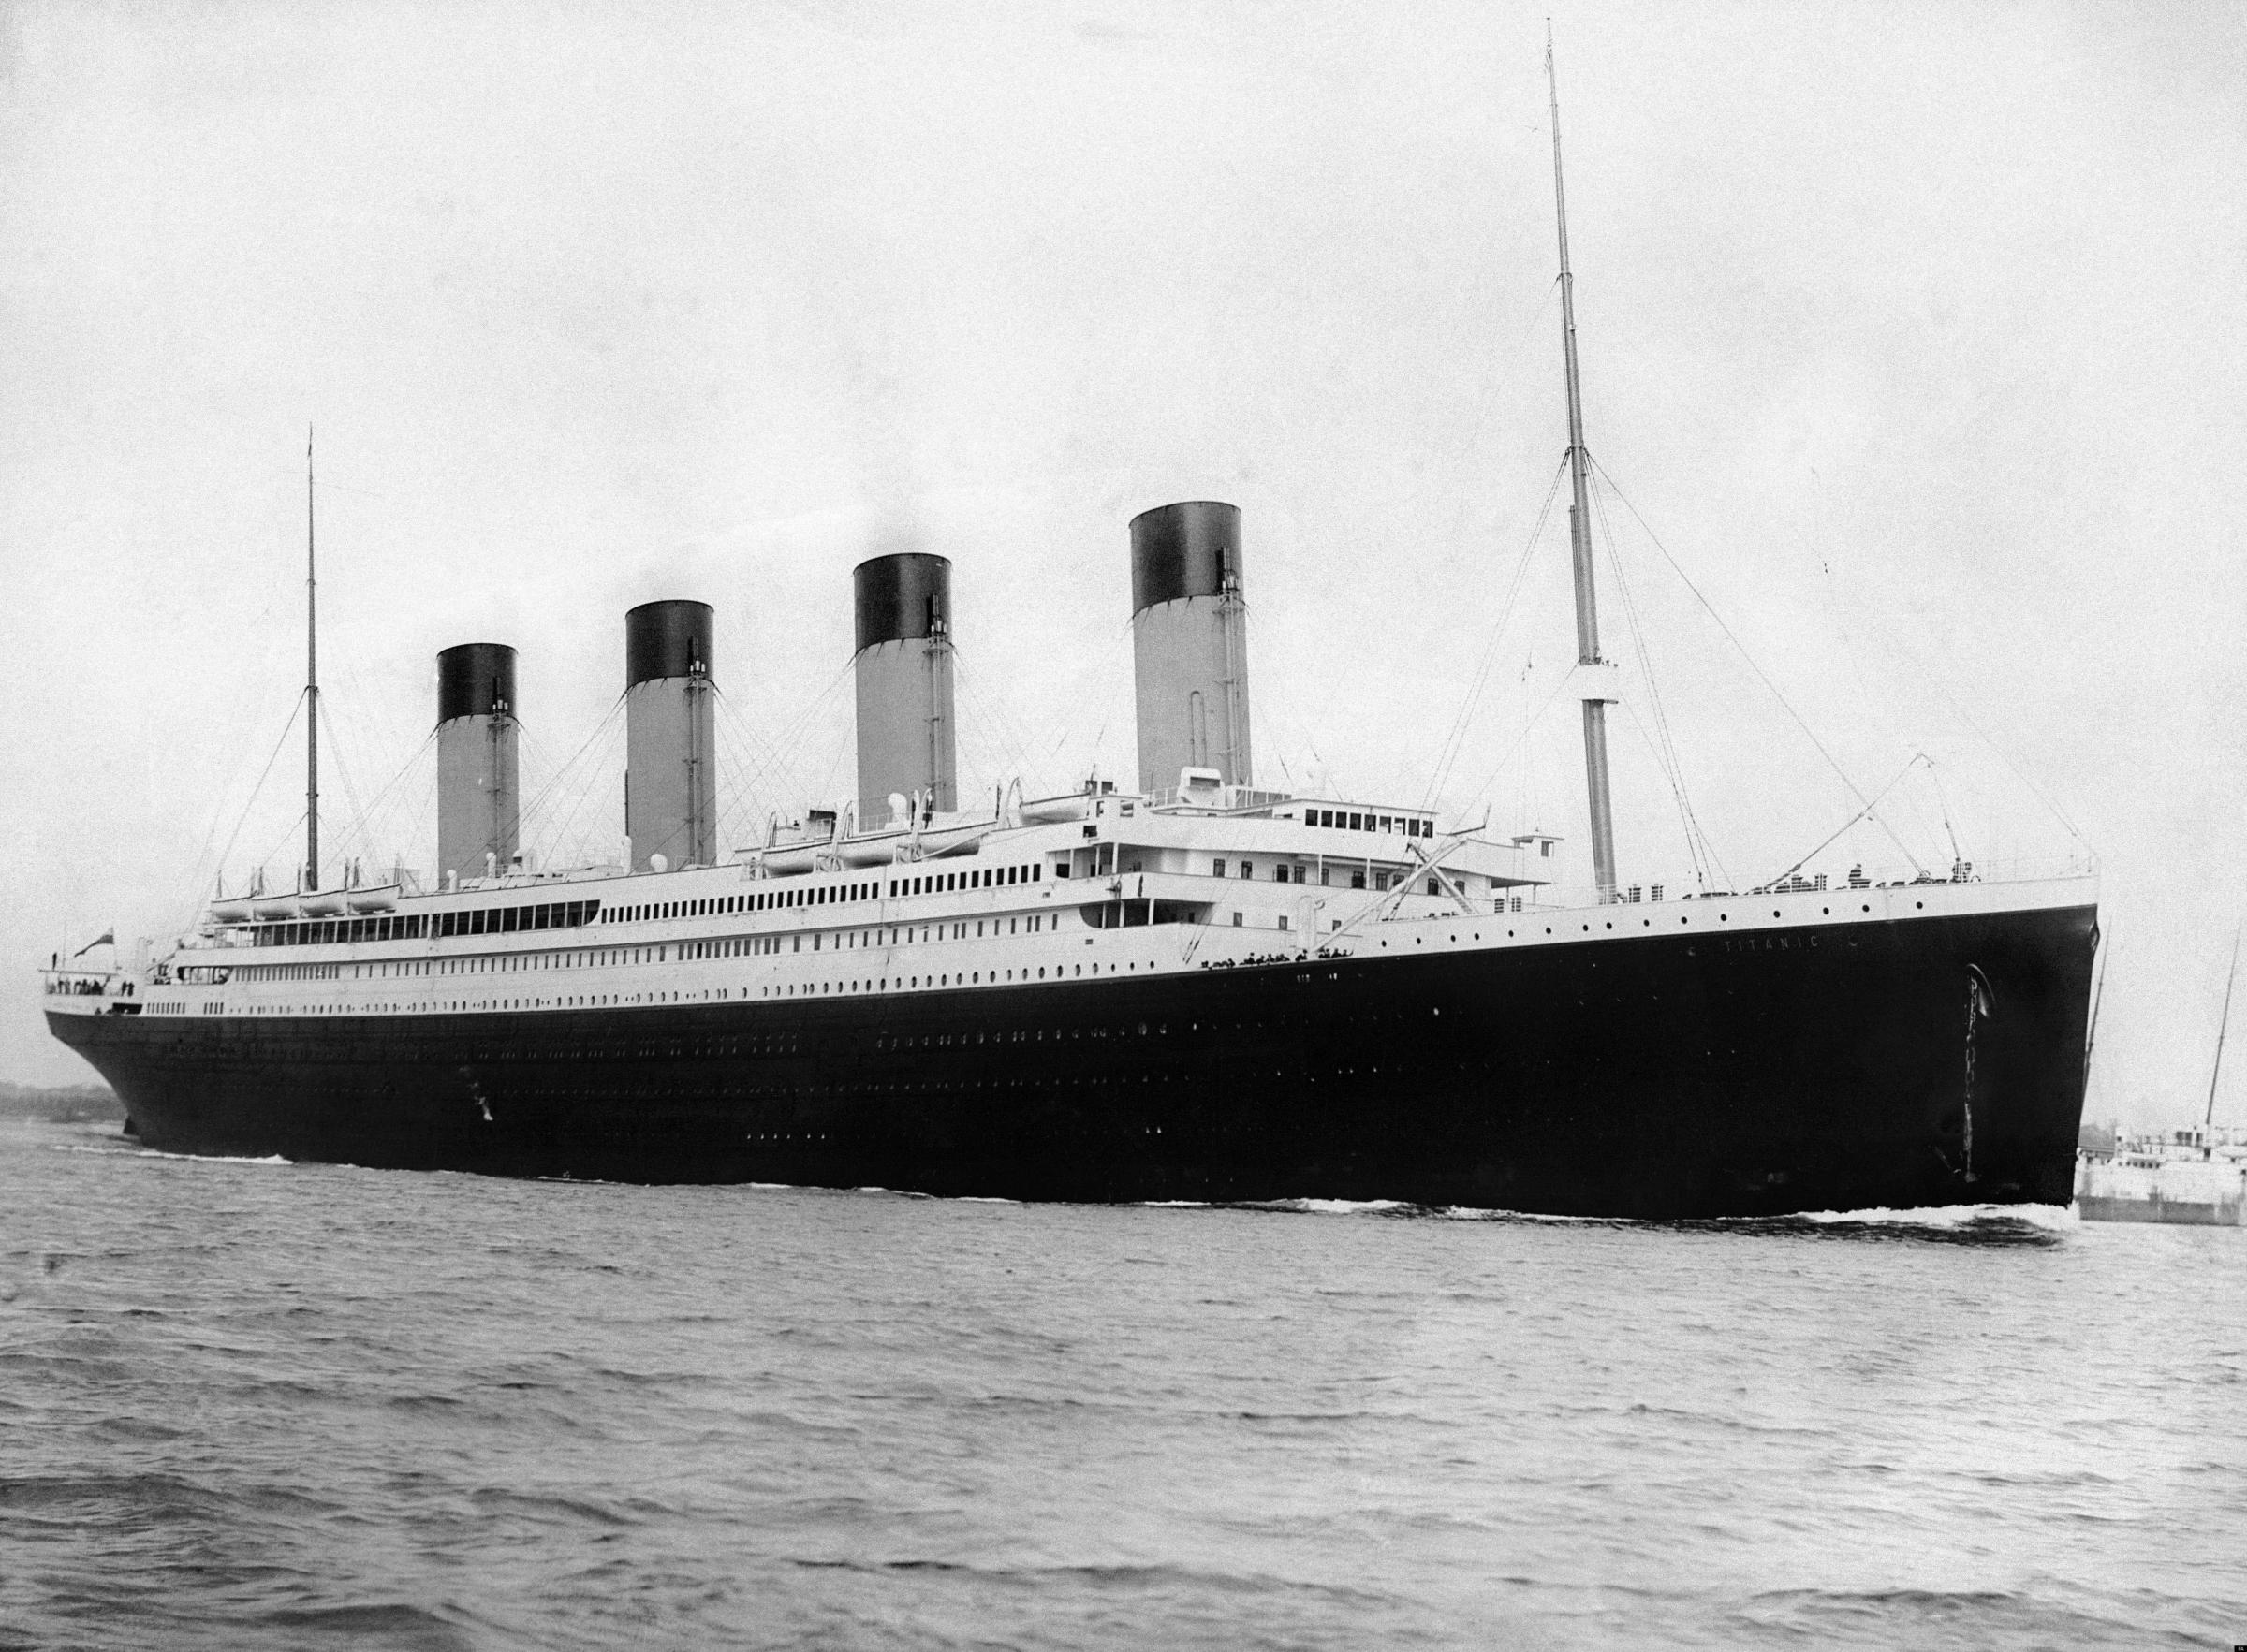 RMS Titanic leaving Southampton on April 10, 1912. Photo: Francis Godolphin Osborn Stuart (1843-1923)